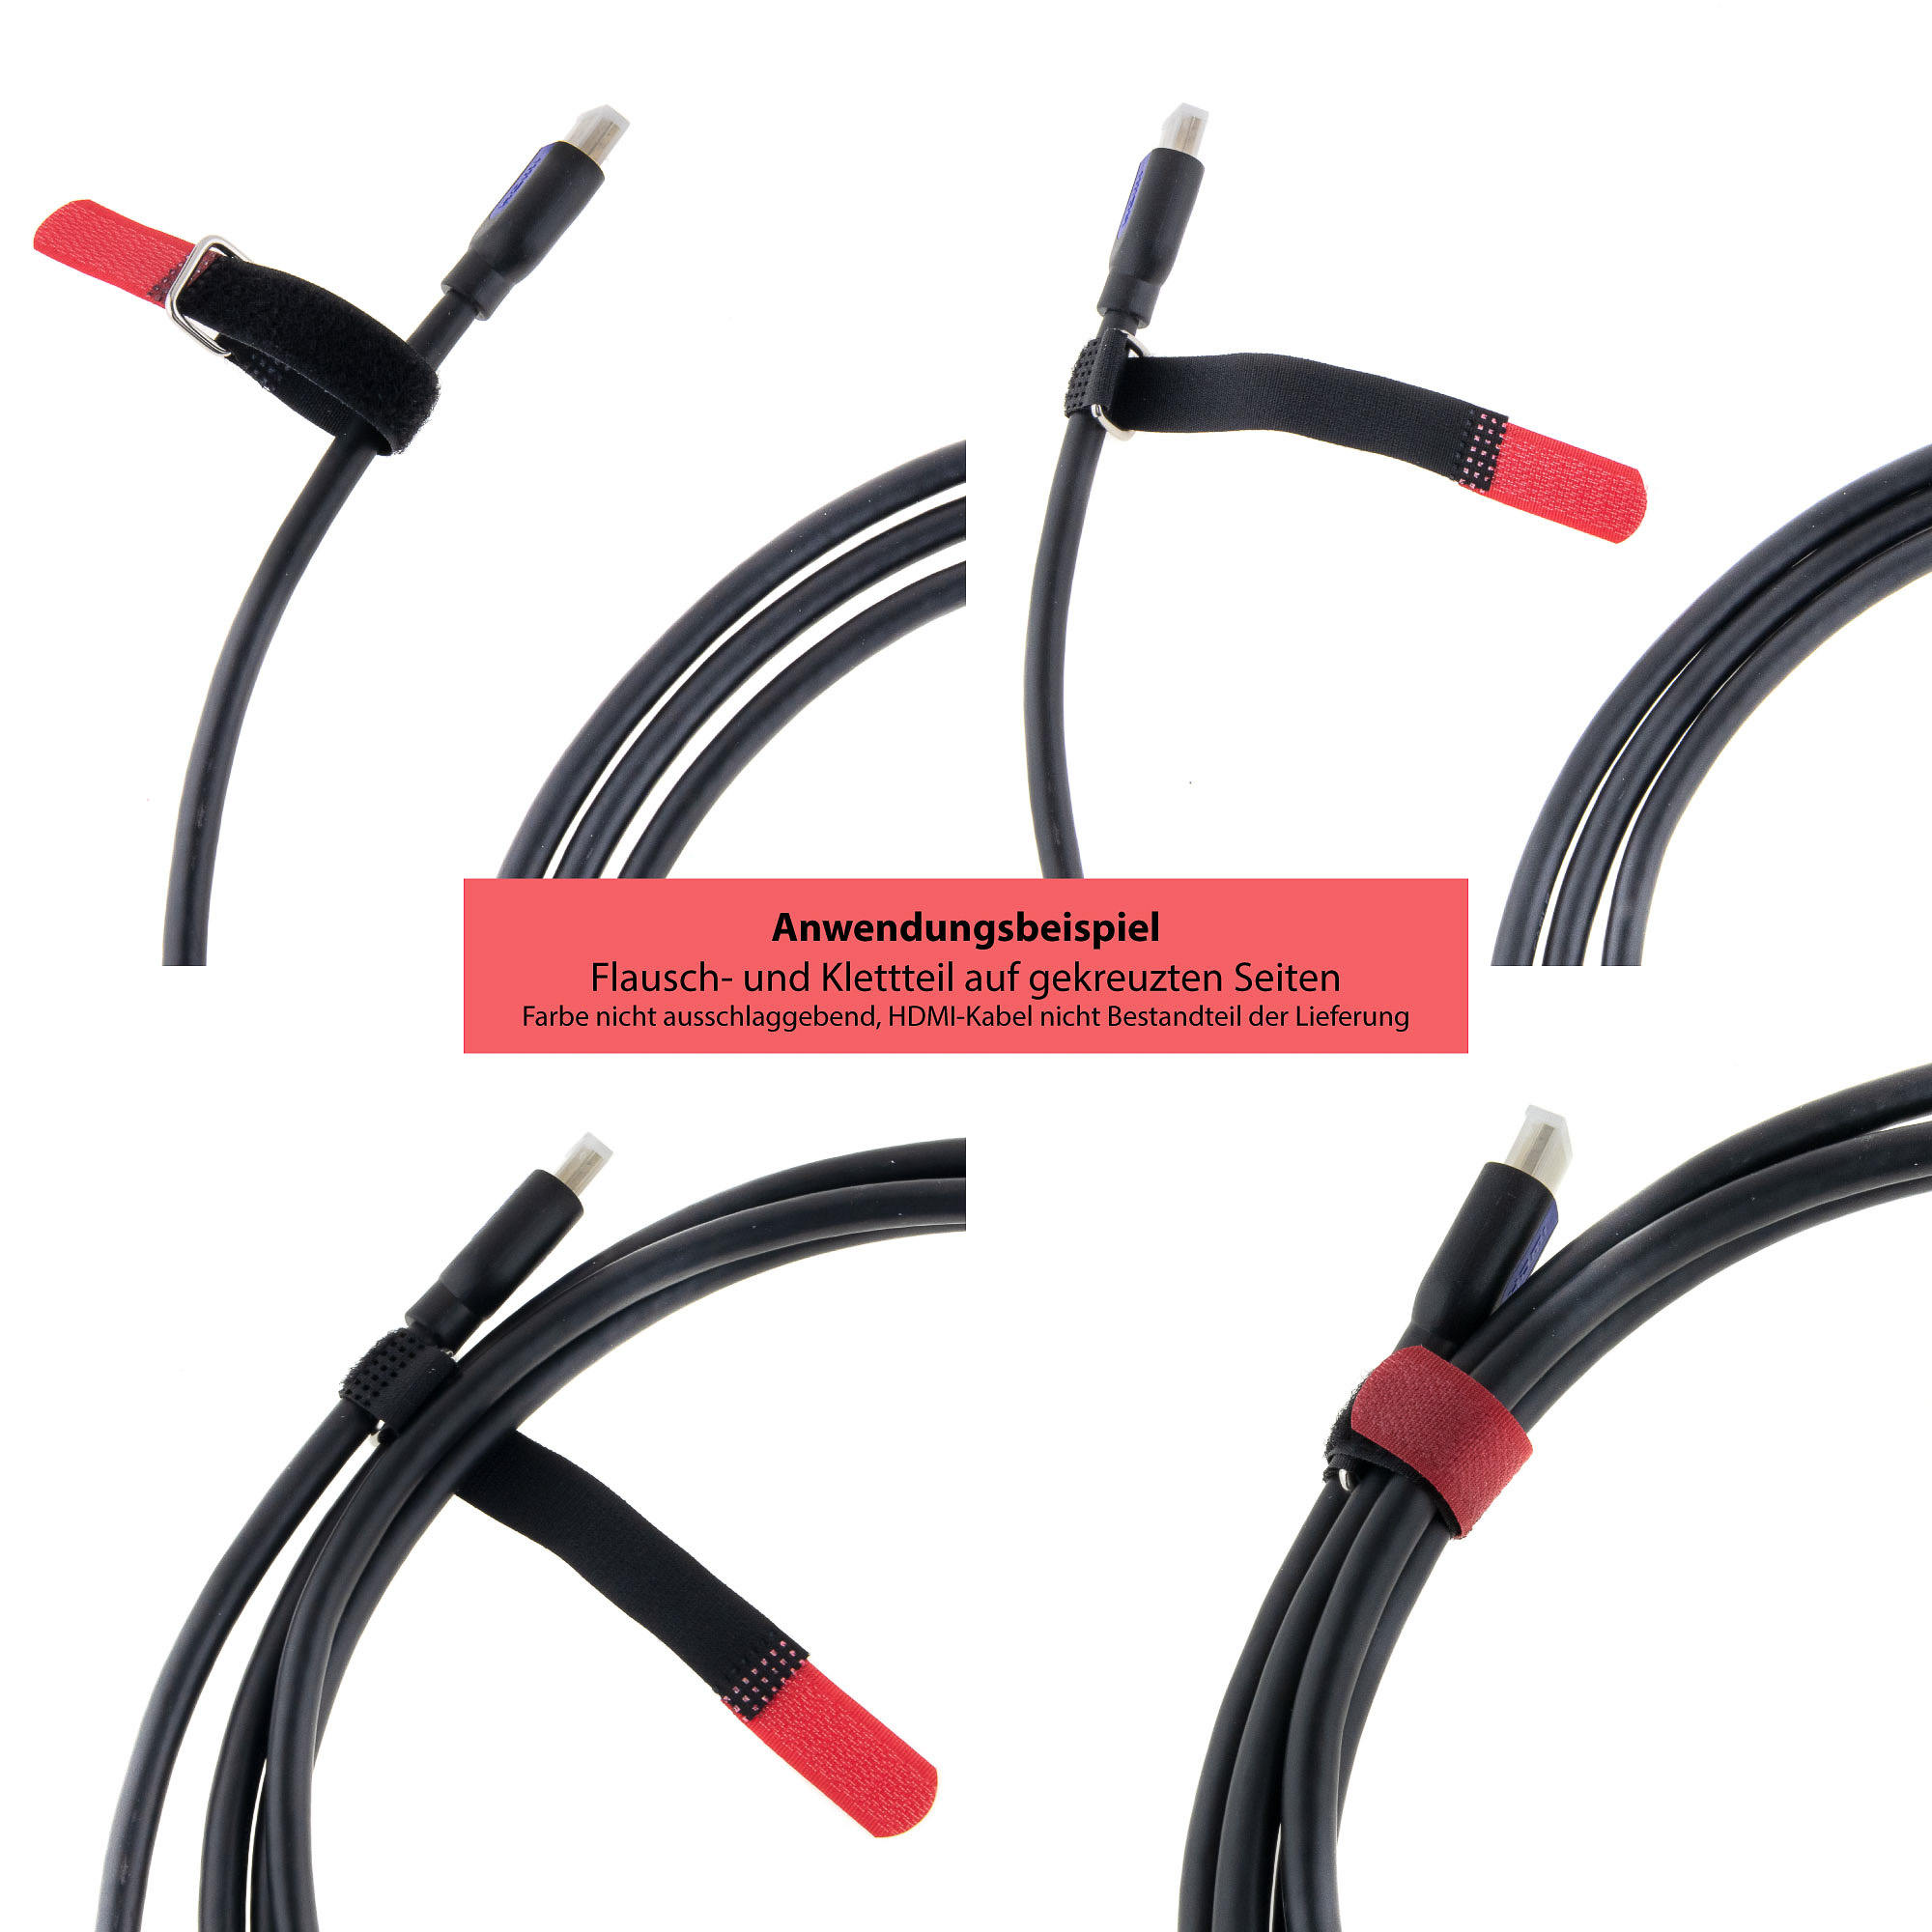 Hook-and-loop strap 400x30, black/blue, crossed, 10PCS